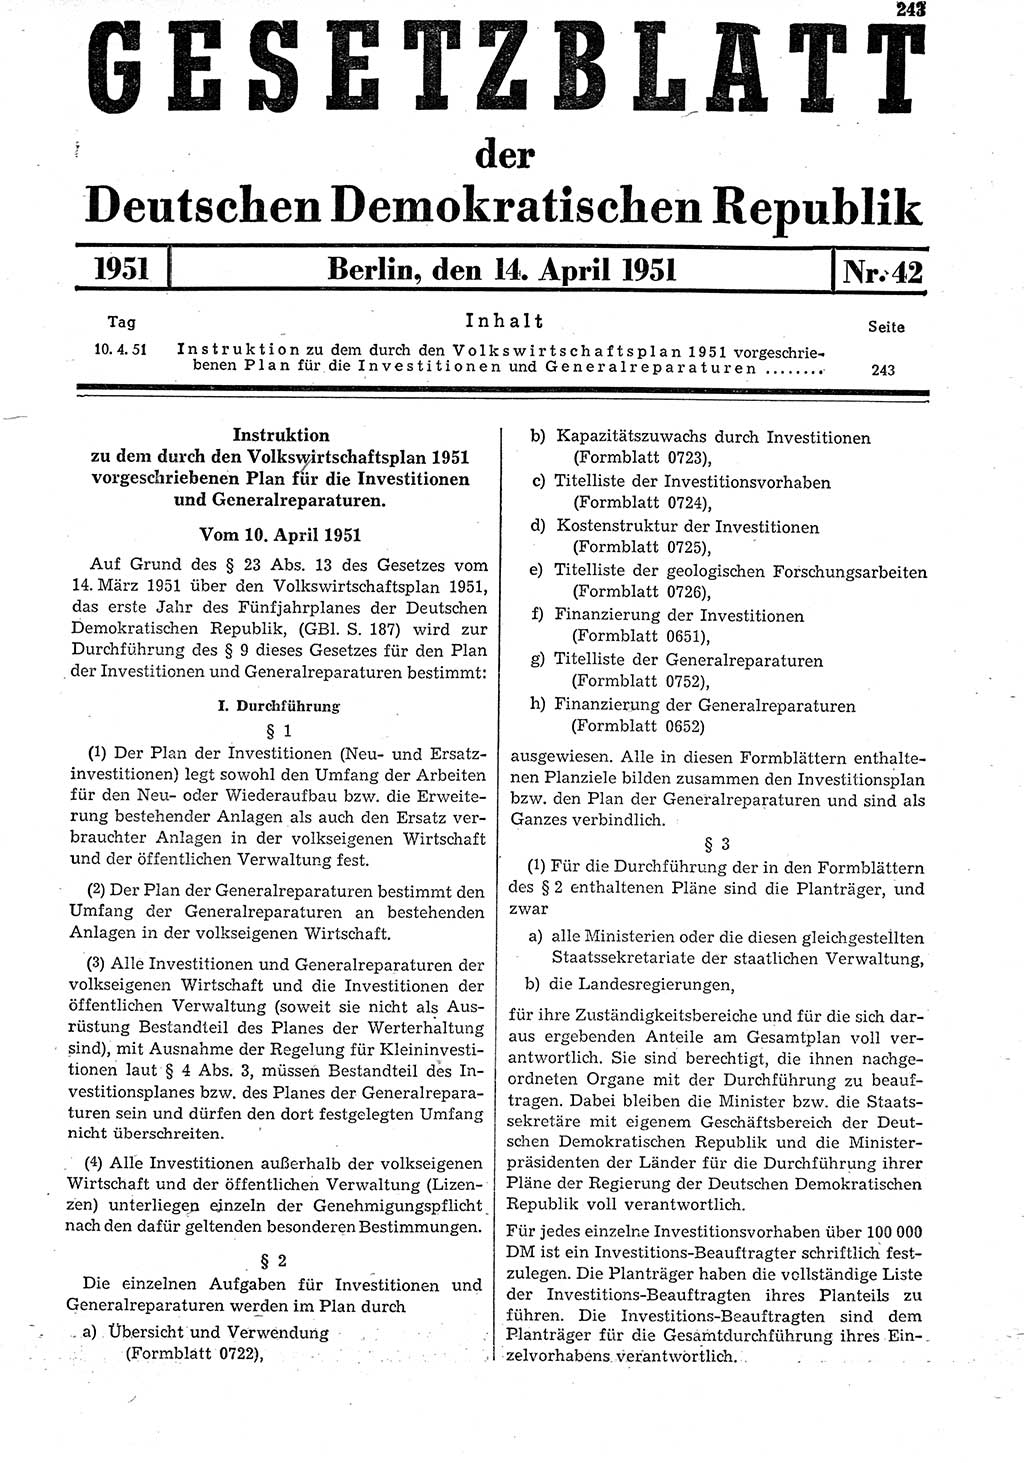 Gesetzblatt (GBl.) der Deutschen Demokratischen Republik (DDR) 1951, Seite 243 (GBl. DDR 1951, S. 243)